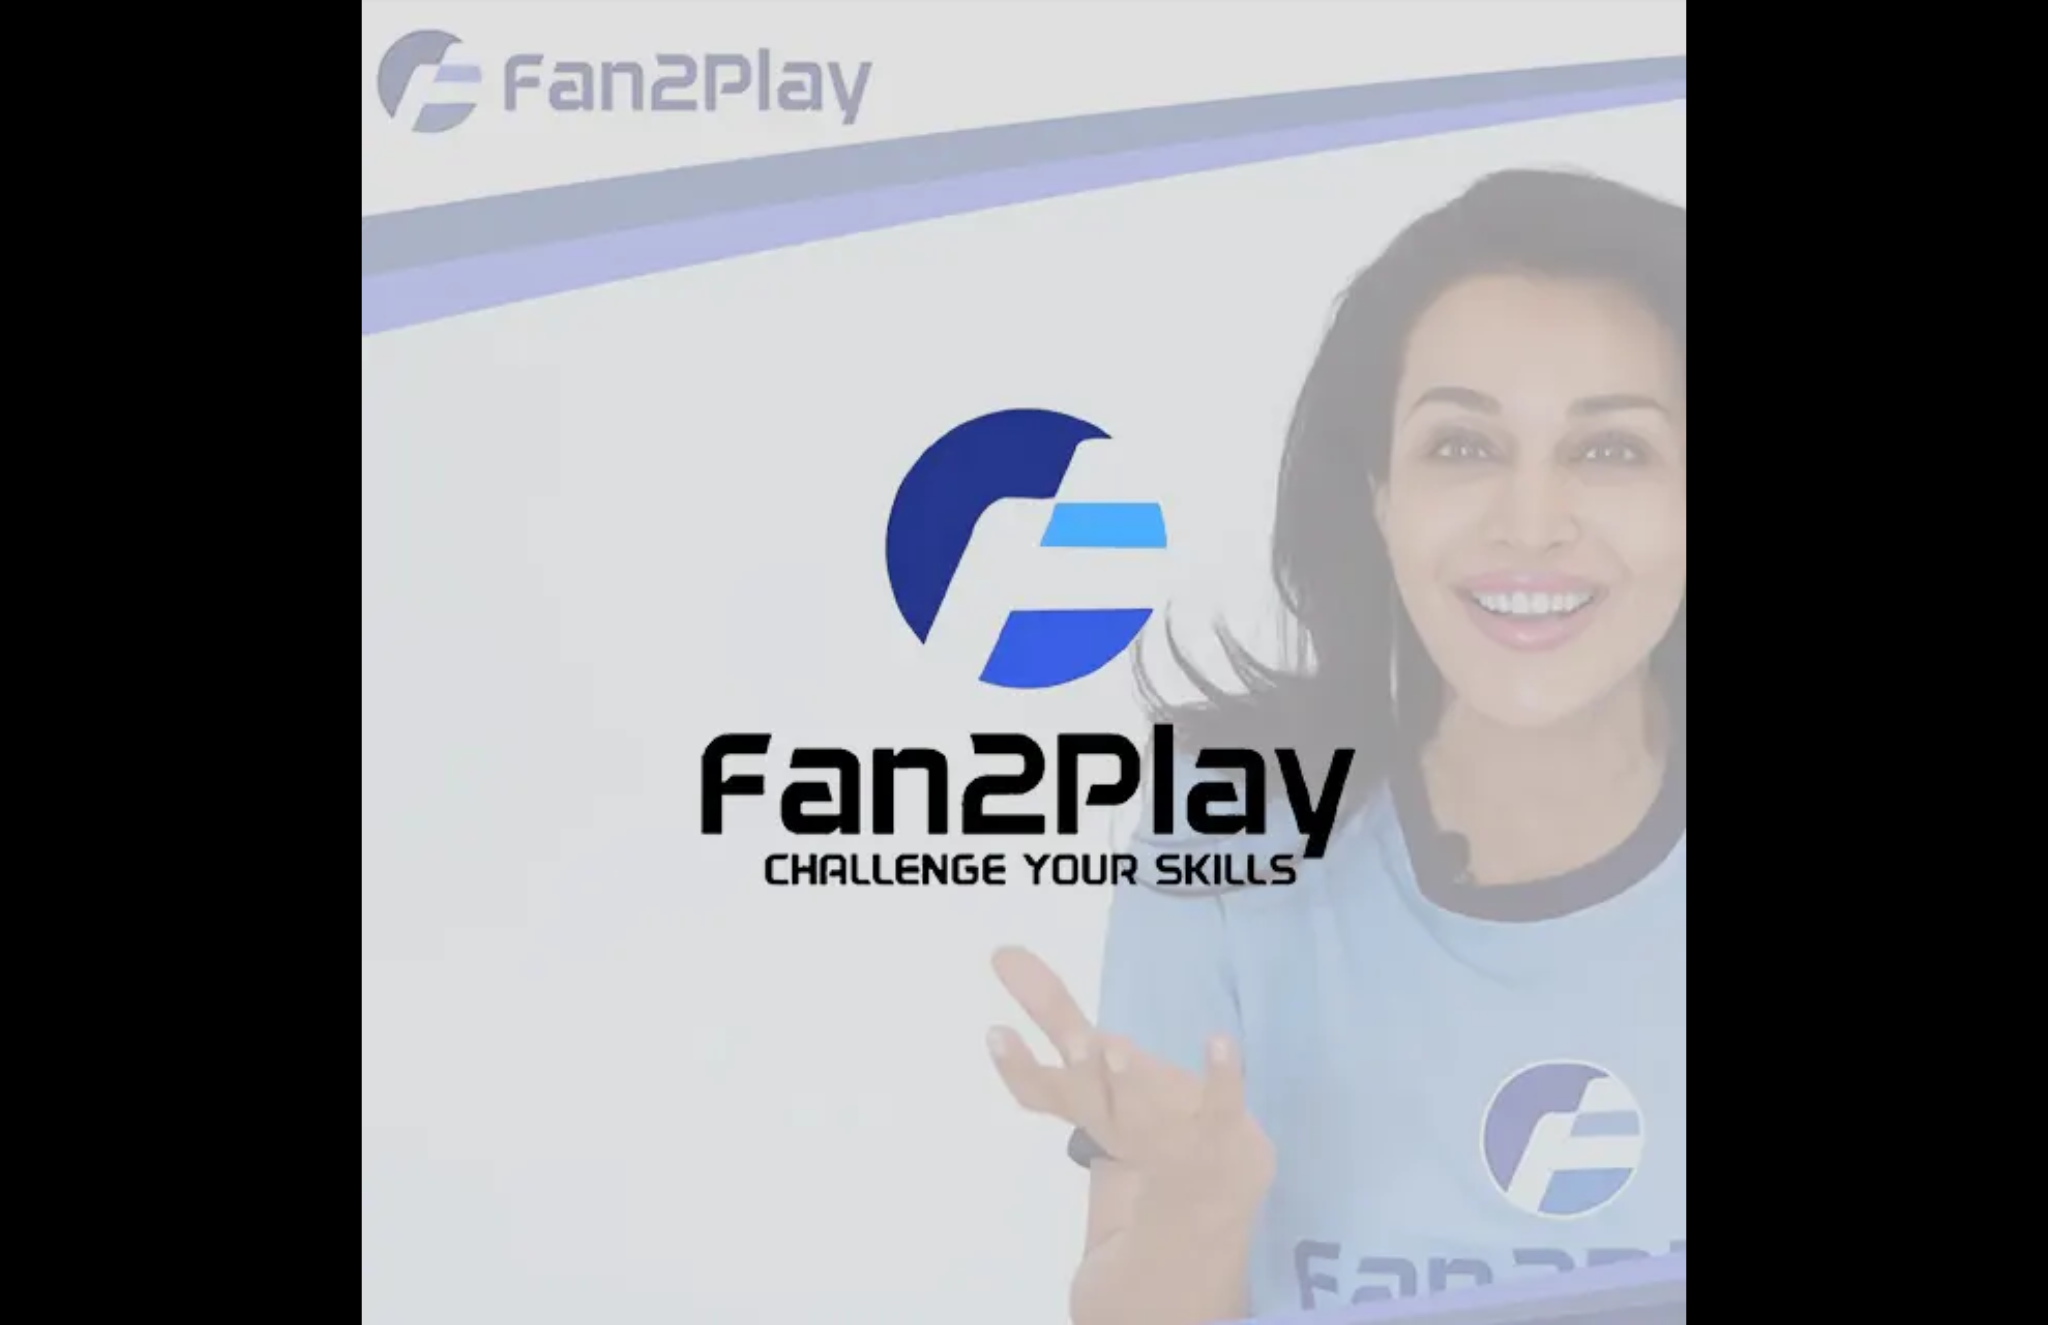 Fan2Play